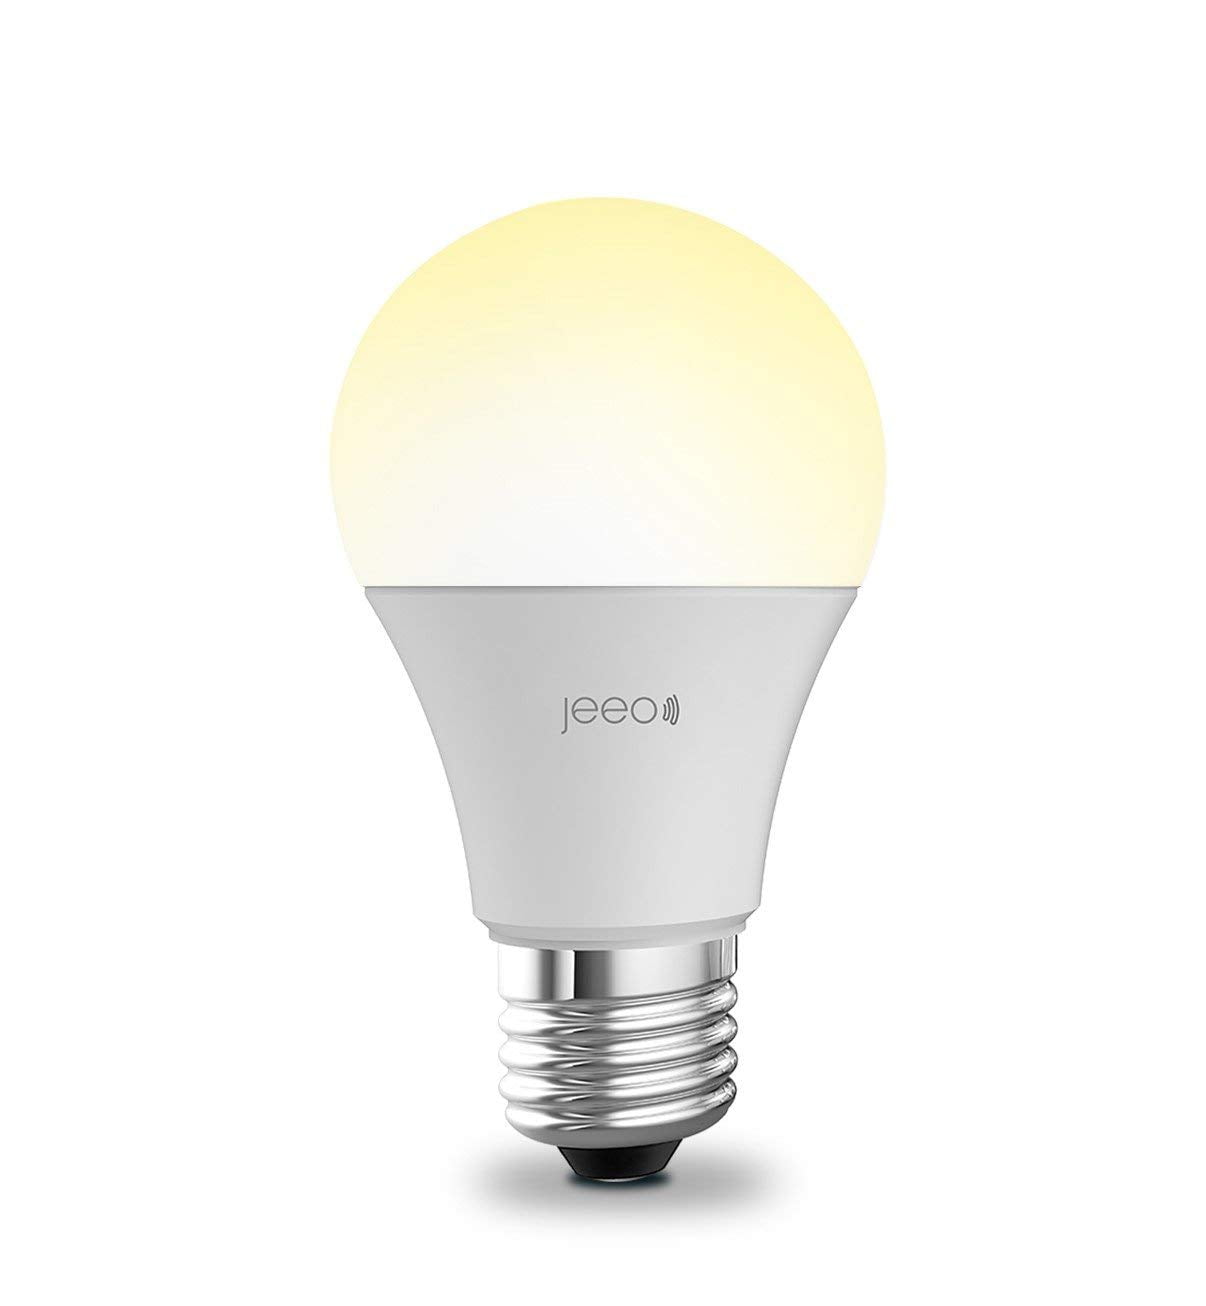 Jeeo Smart Wi-Fi LED Light Bulb - Walmart.com